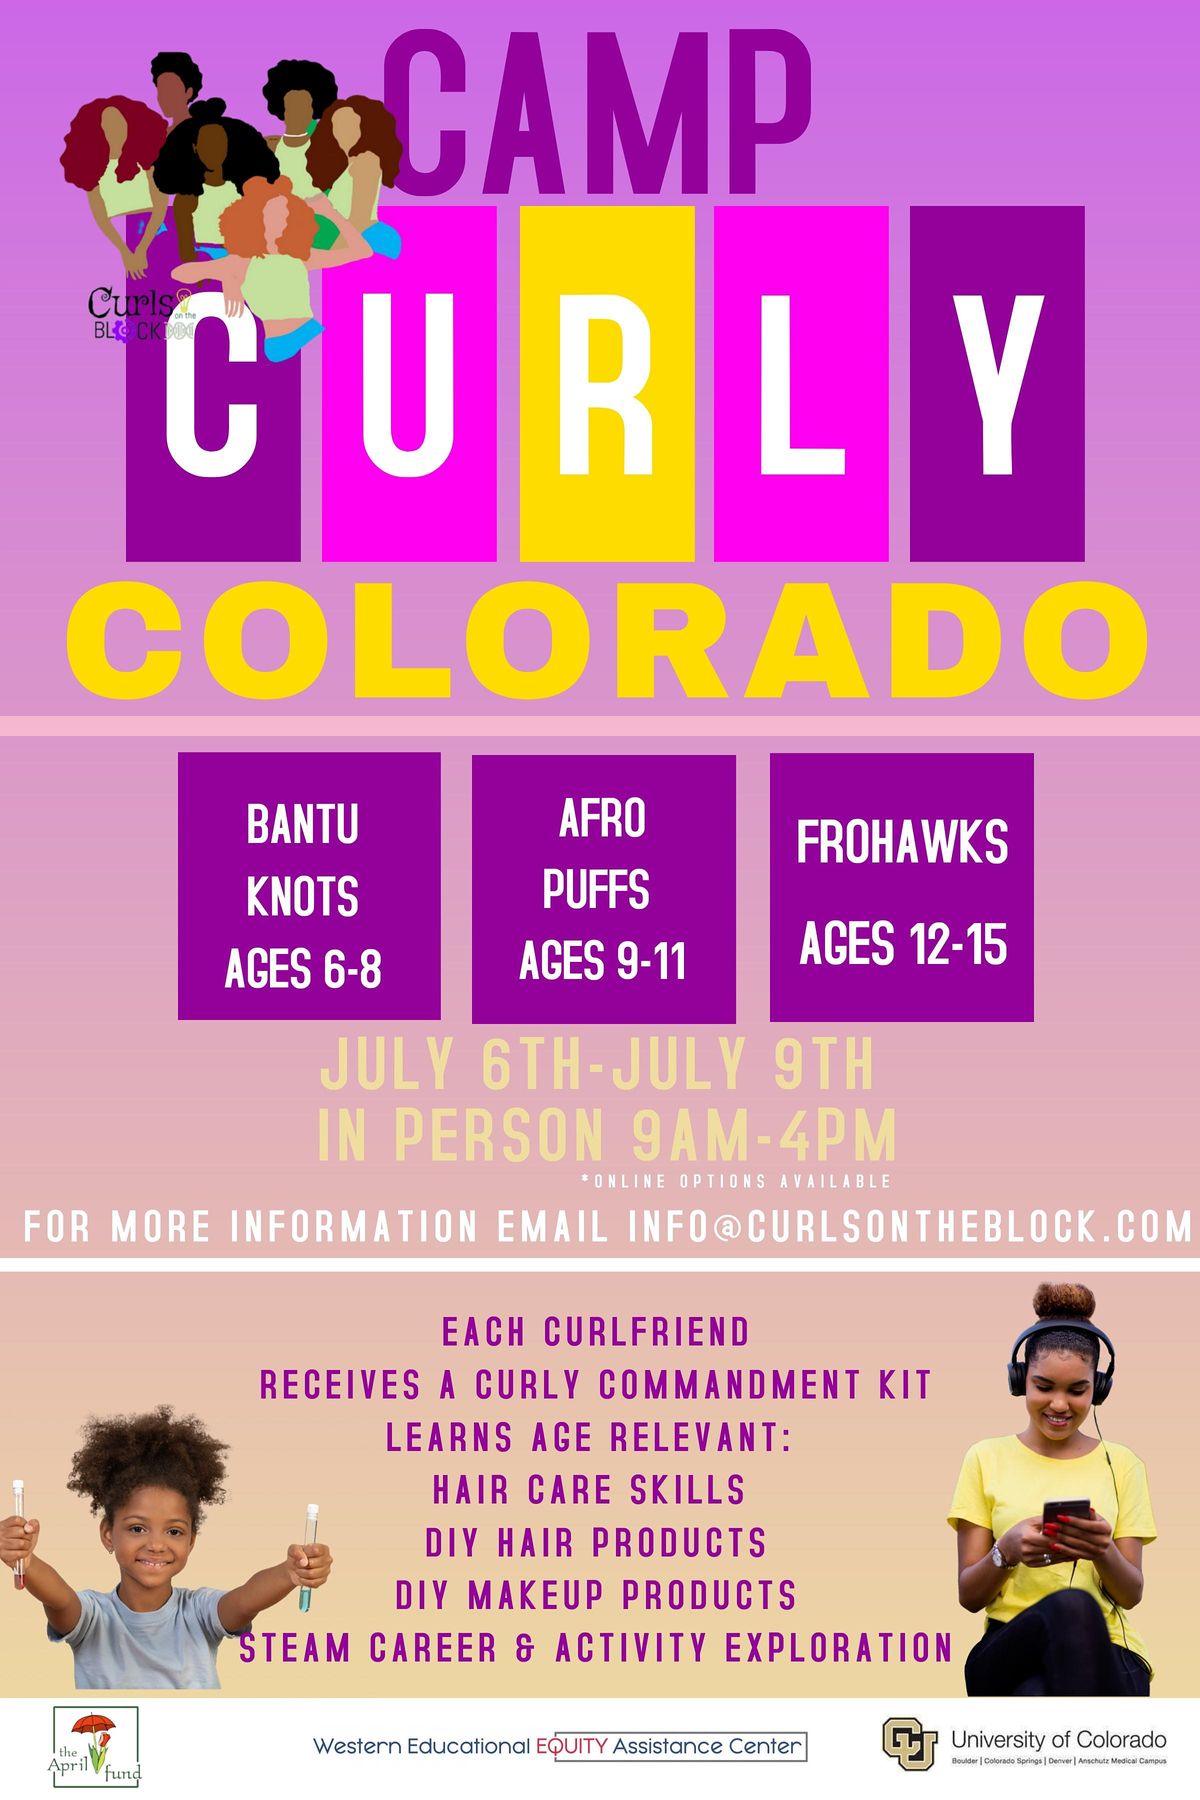 Camp Curly Colorado 2022